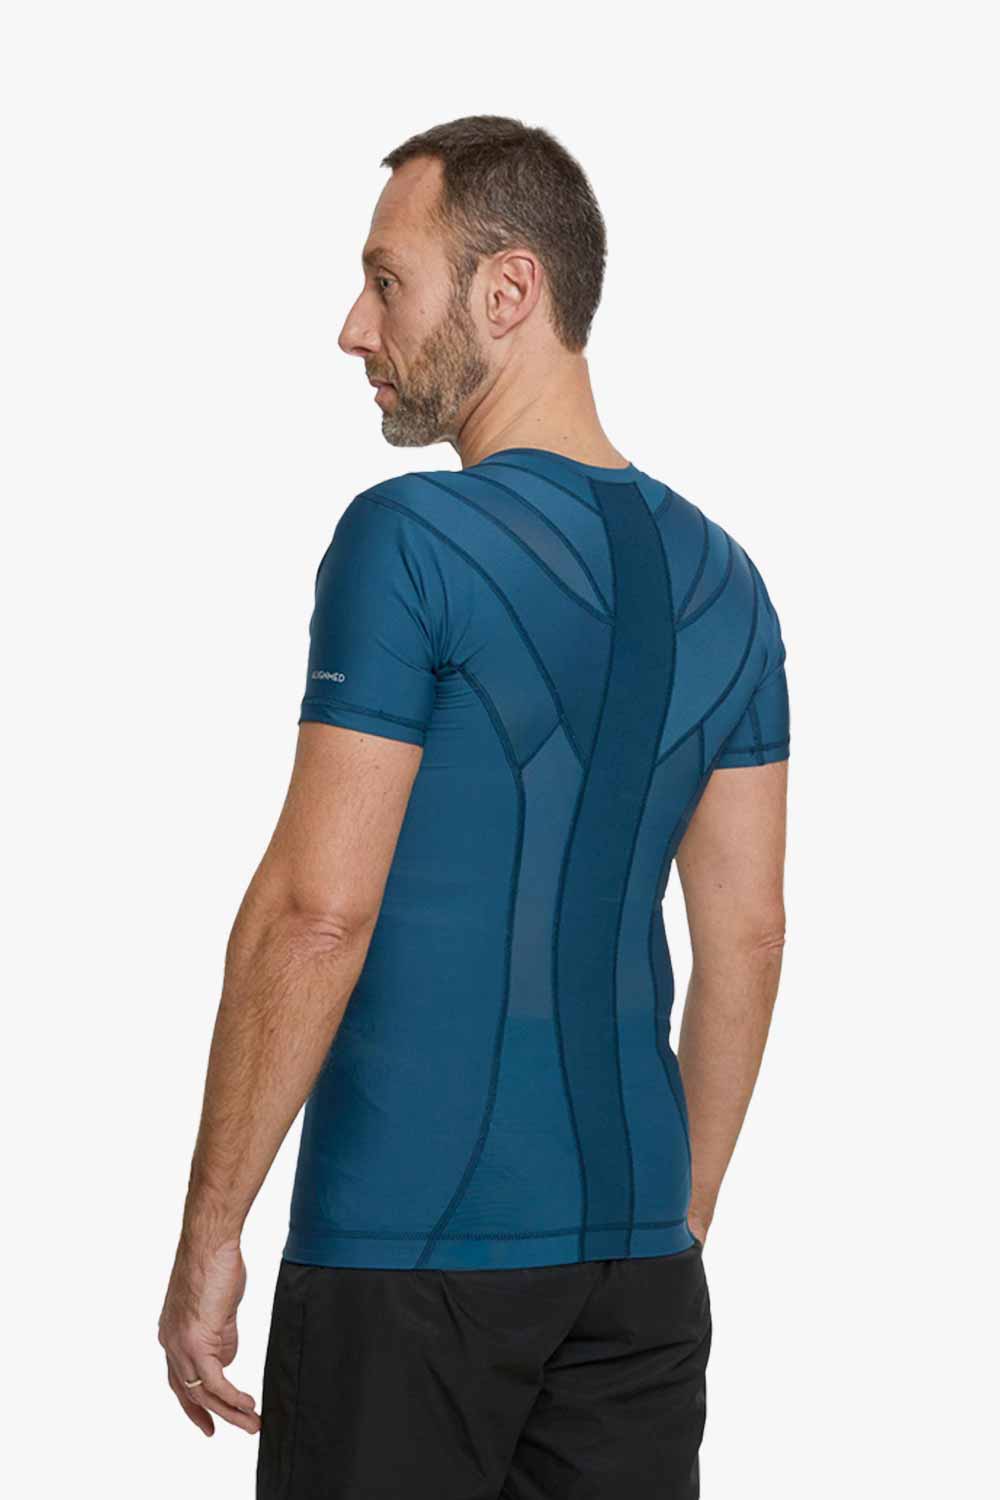 DEMO - Men's Posture Shirt™ - Sininen